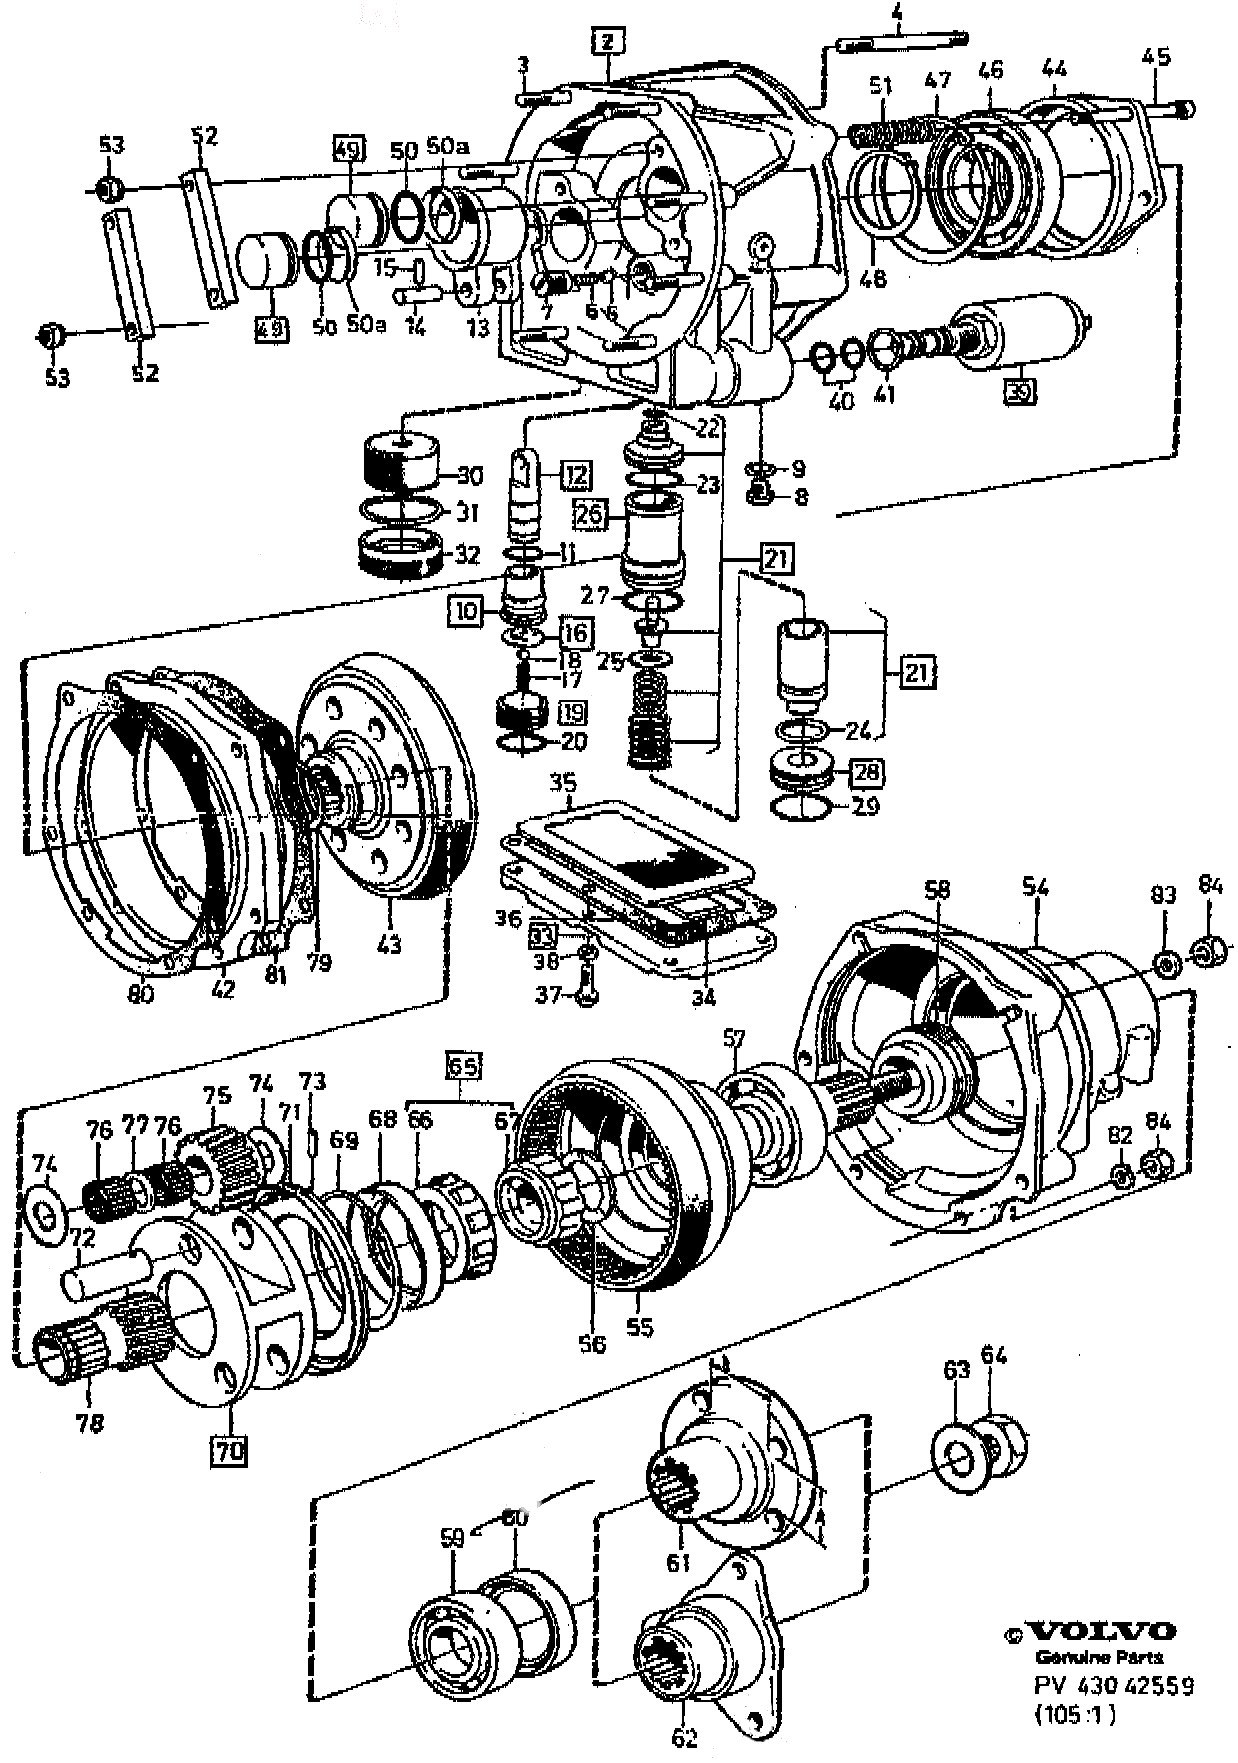 Brake Parts Diagram Volvo S80 Parts Diagram Wiring Diagram Of Brake Parts Diagram